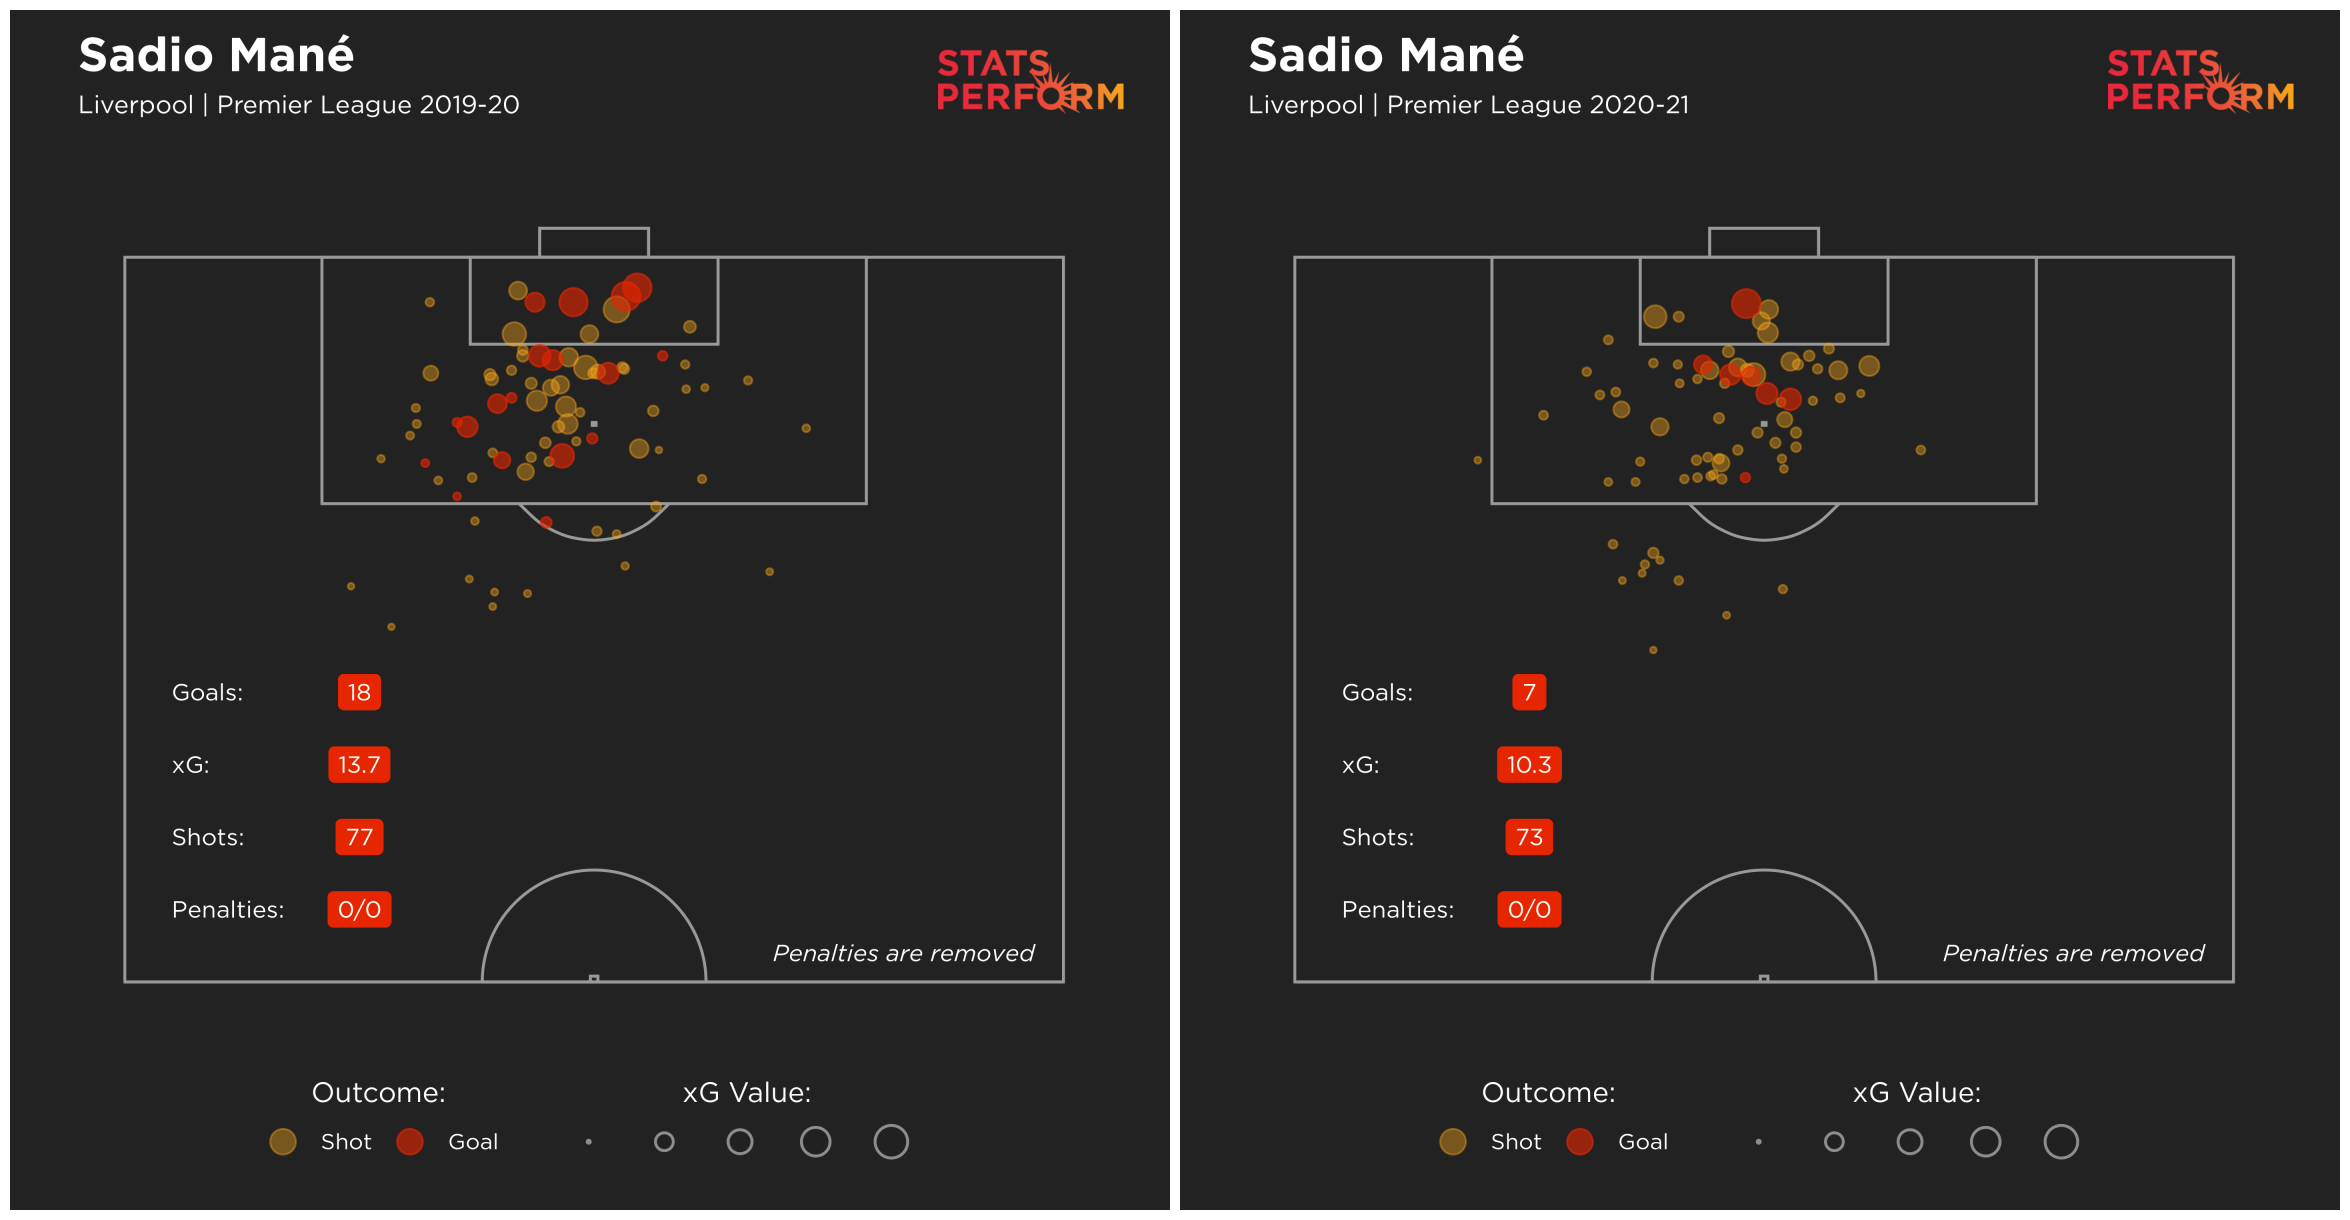 Sadio Mane is missing more high-xG chances than last season